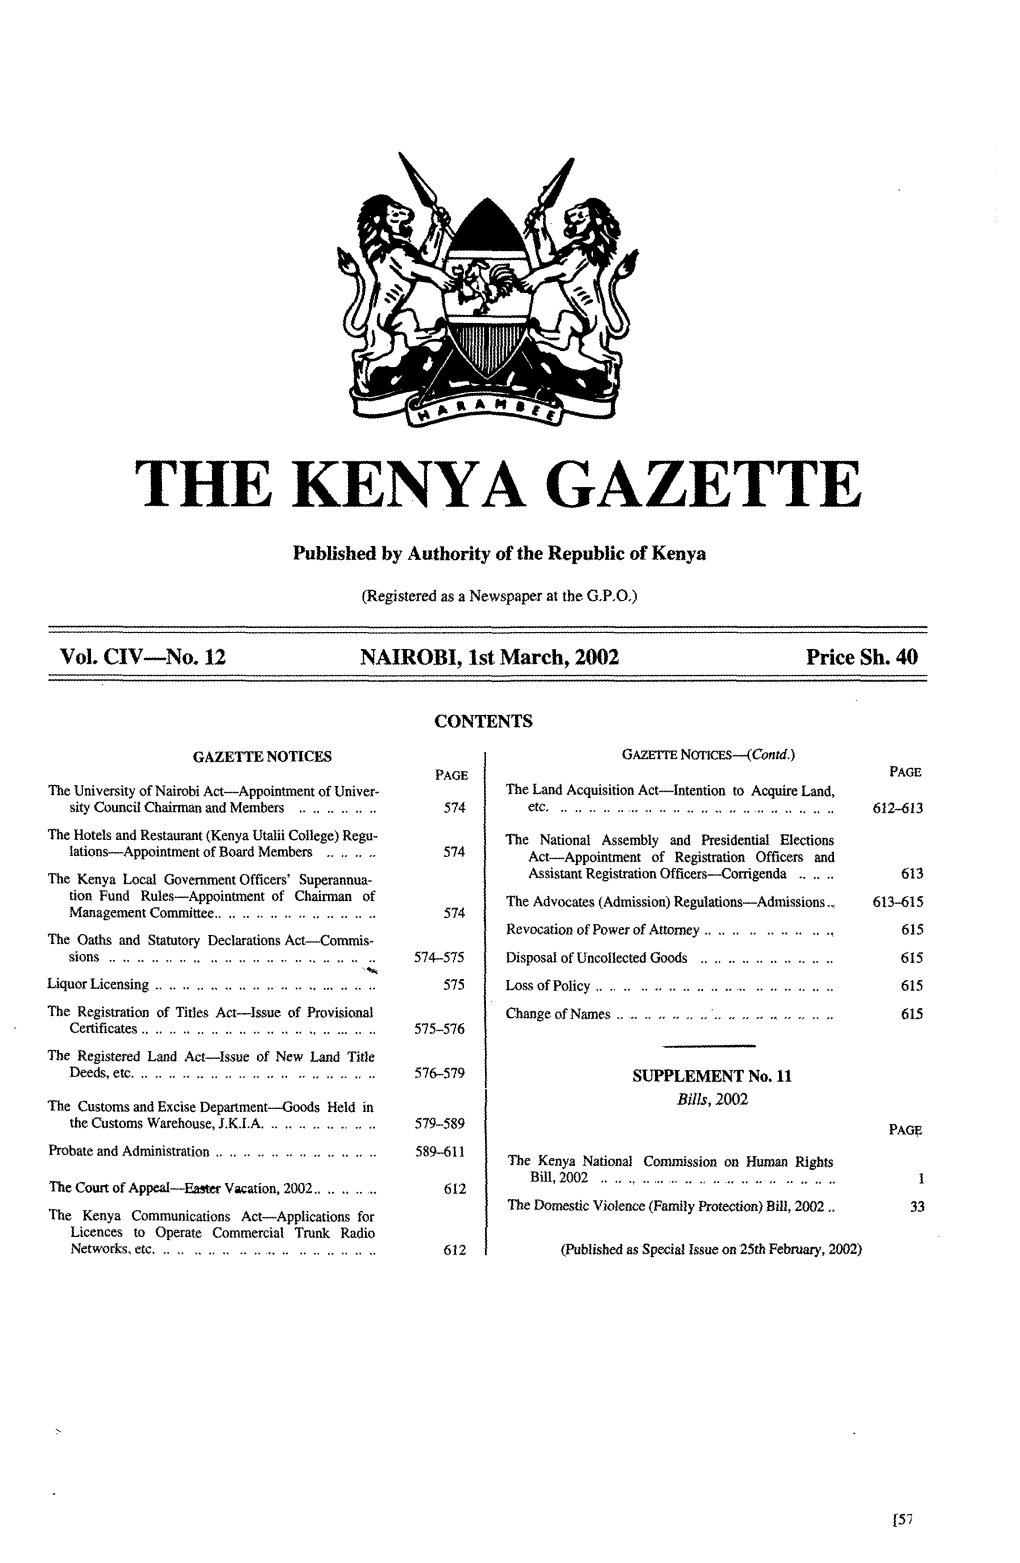 The Kenya Gazette 579